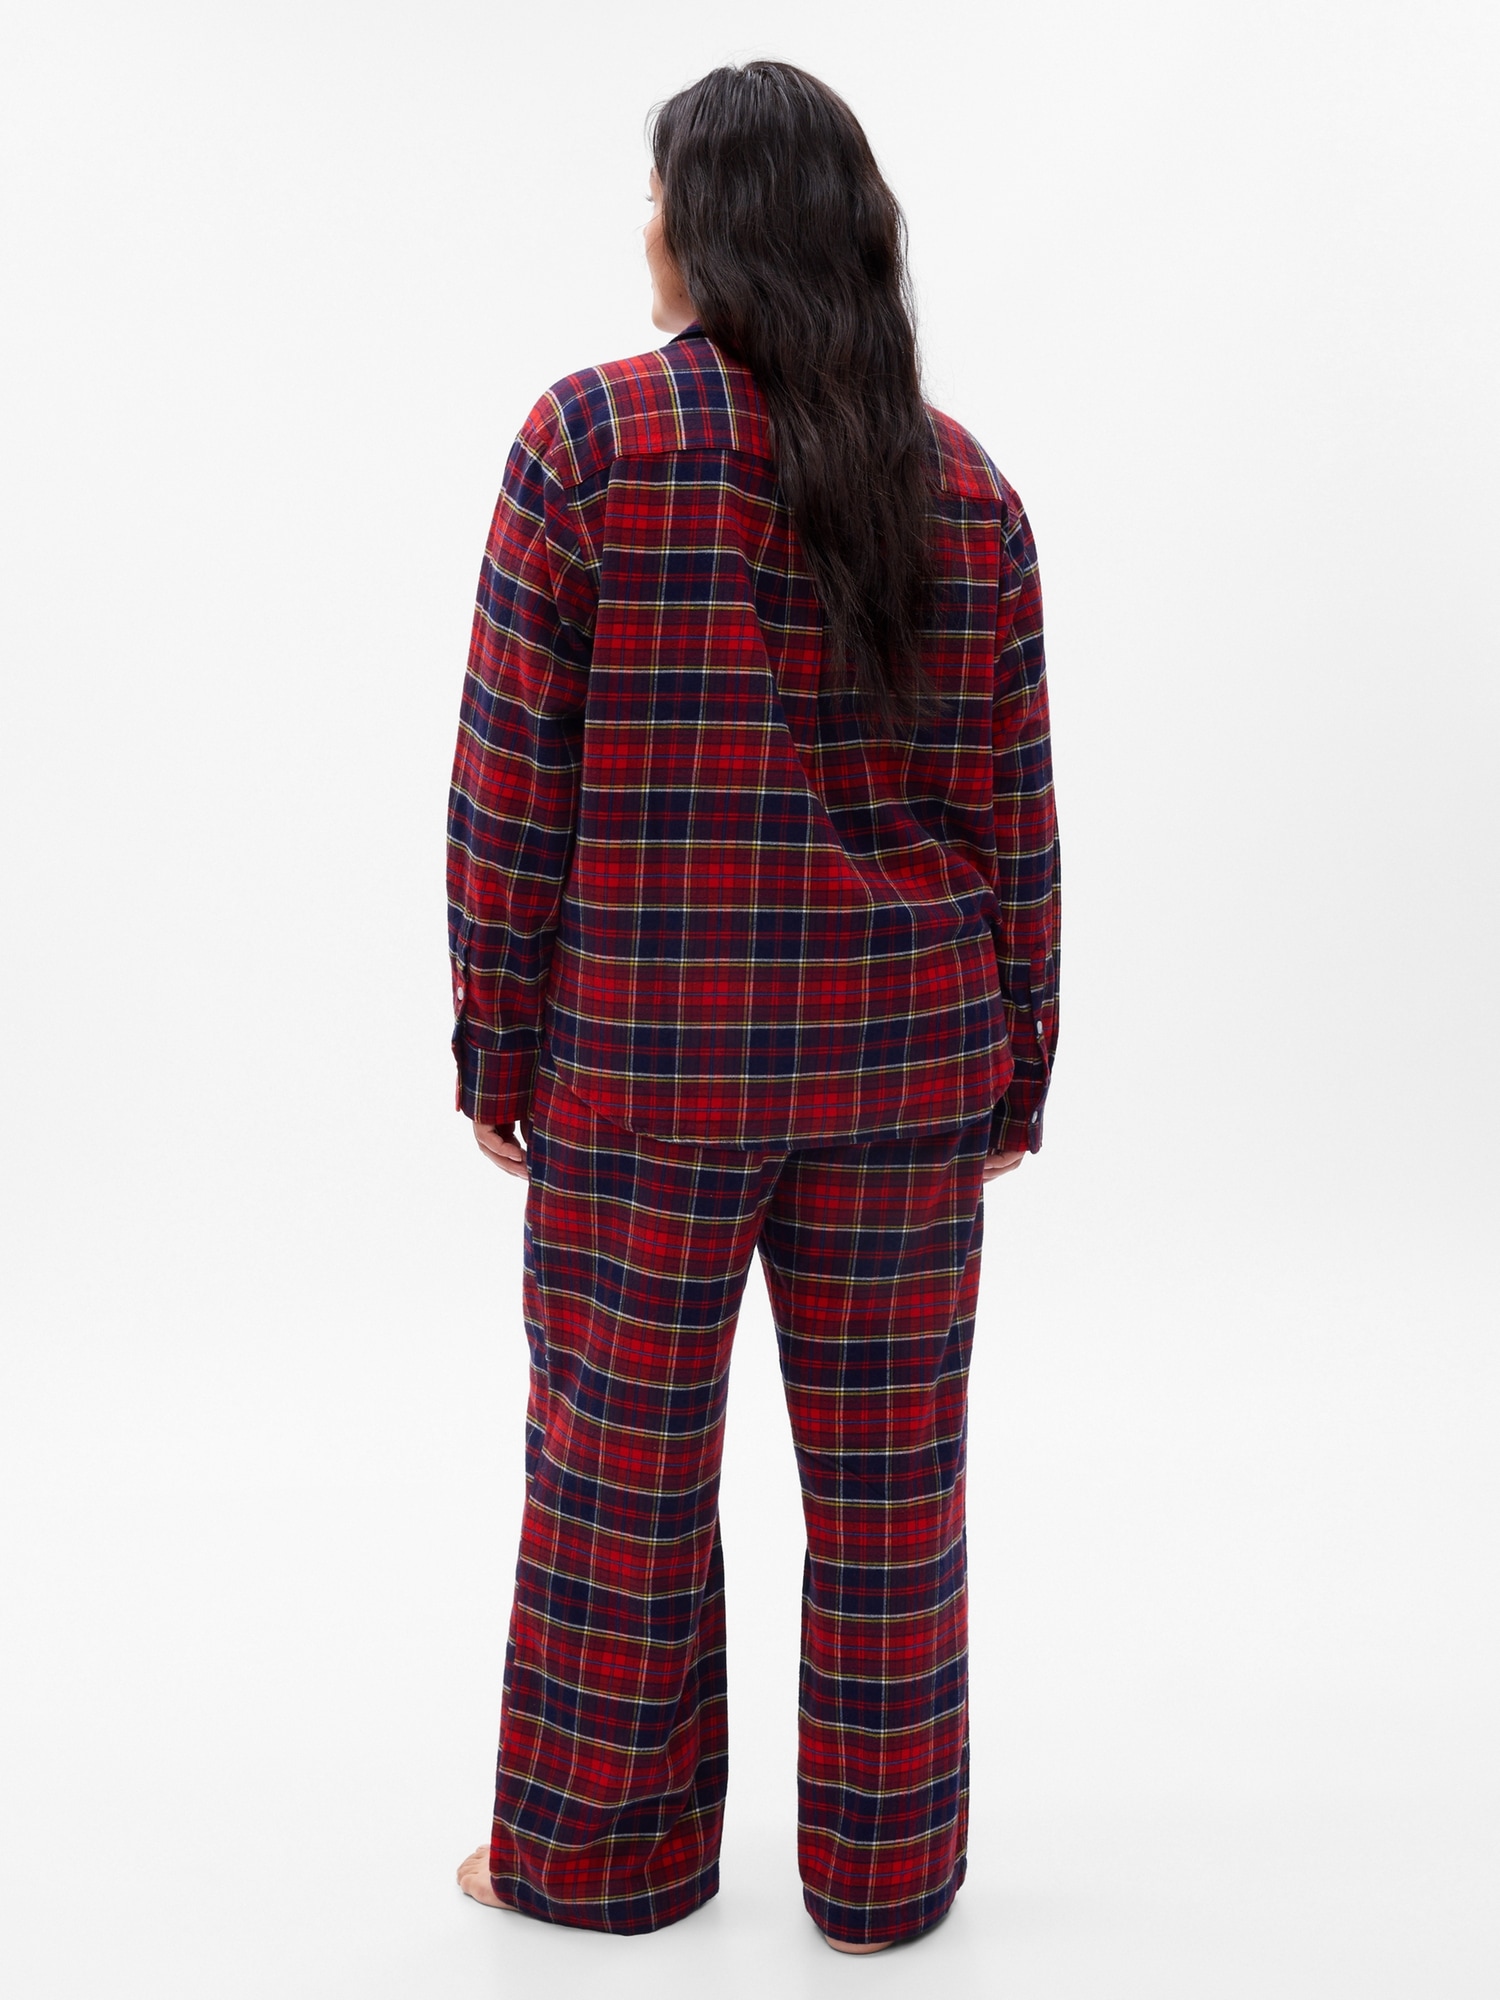 Winter flannel pyjama set